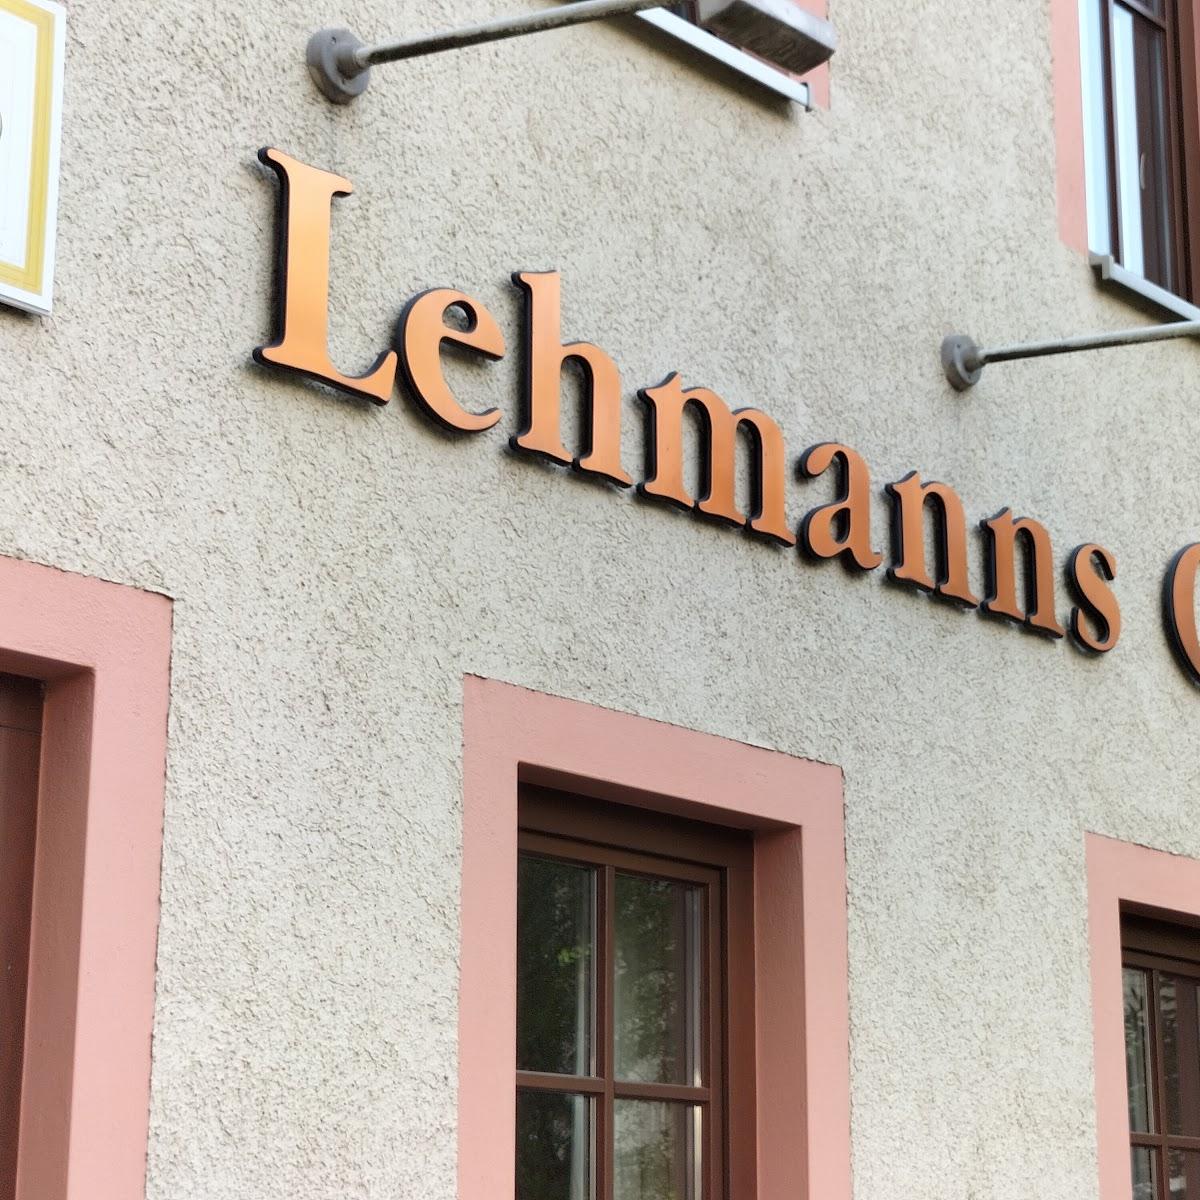 Restaurant "Lehmanns Café" in Chemnitz